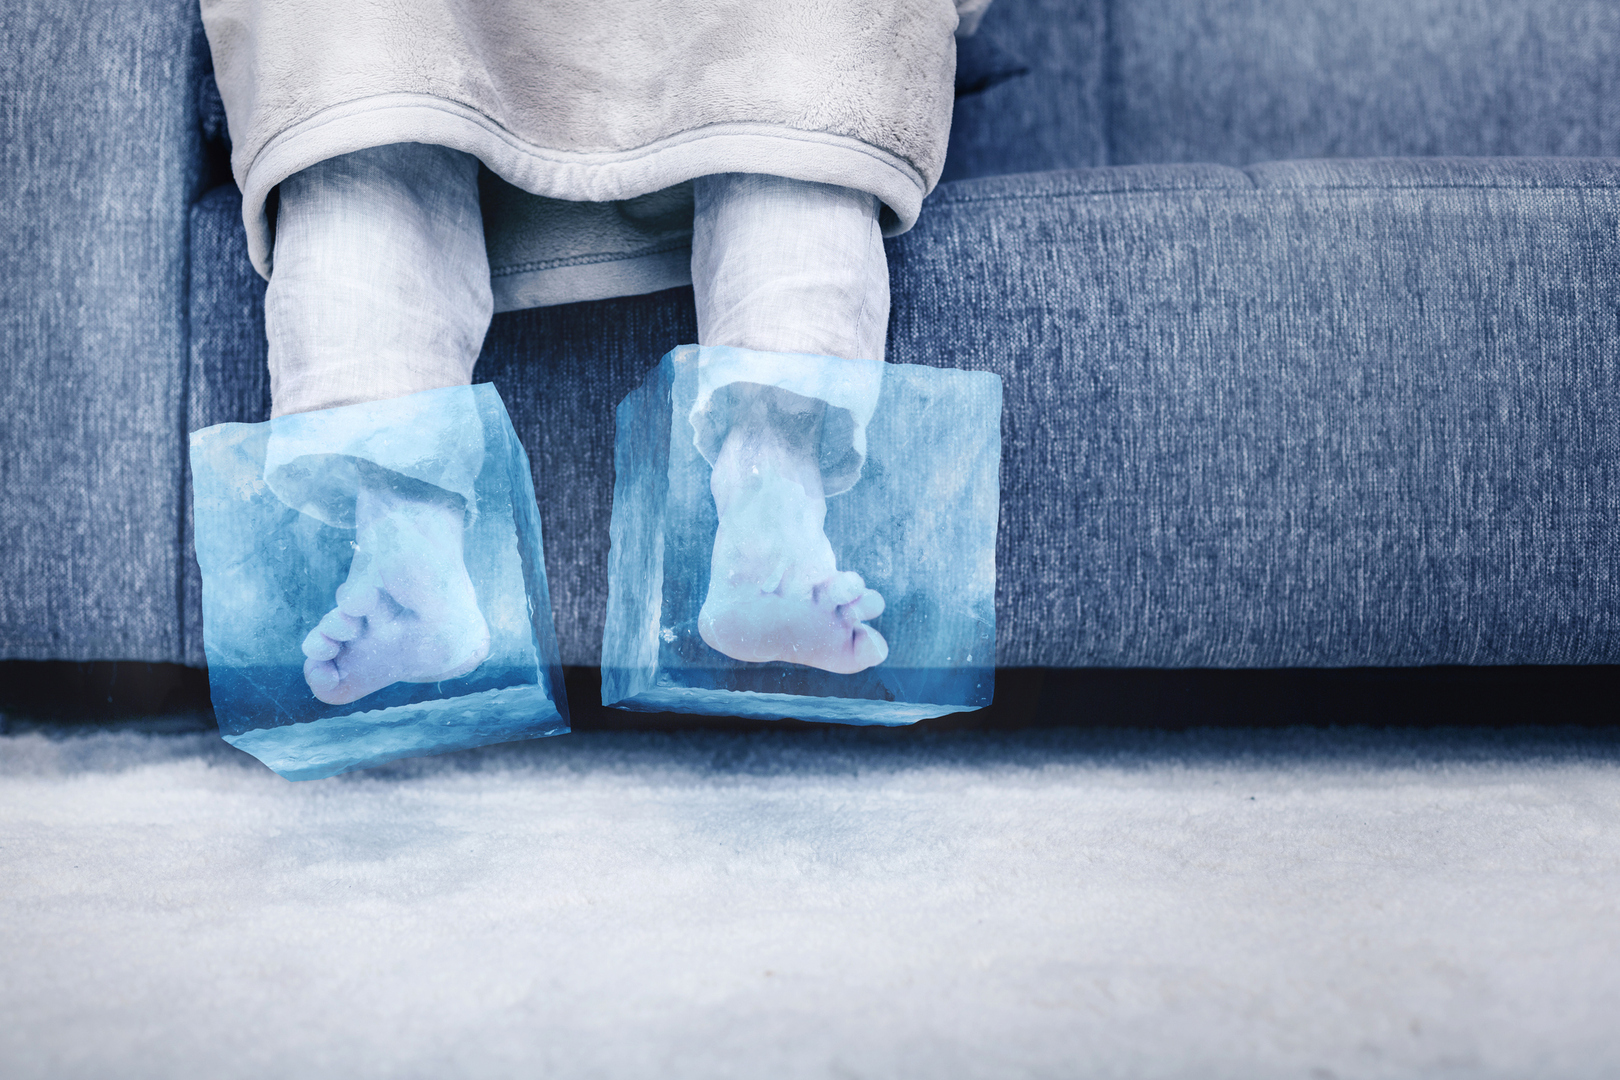 حالات مرضية كامنة قد تكون وراء برودة القدمين المستمرة